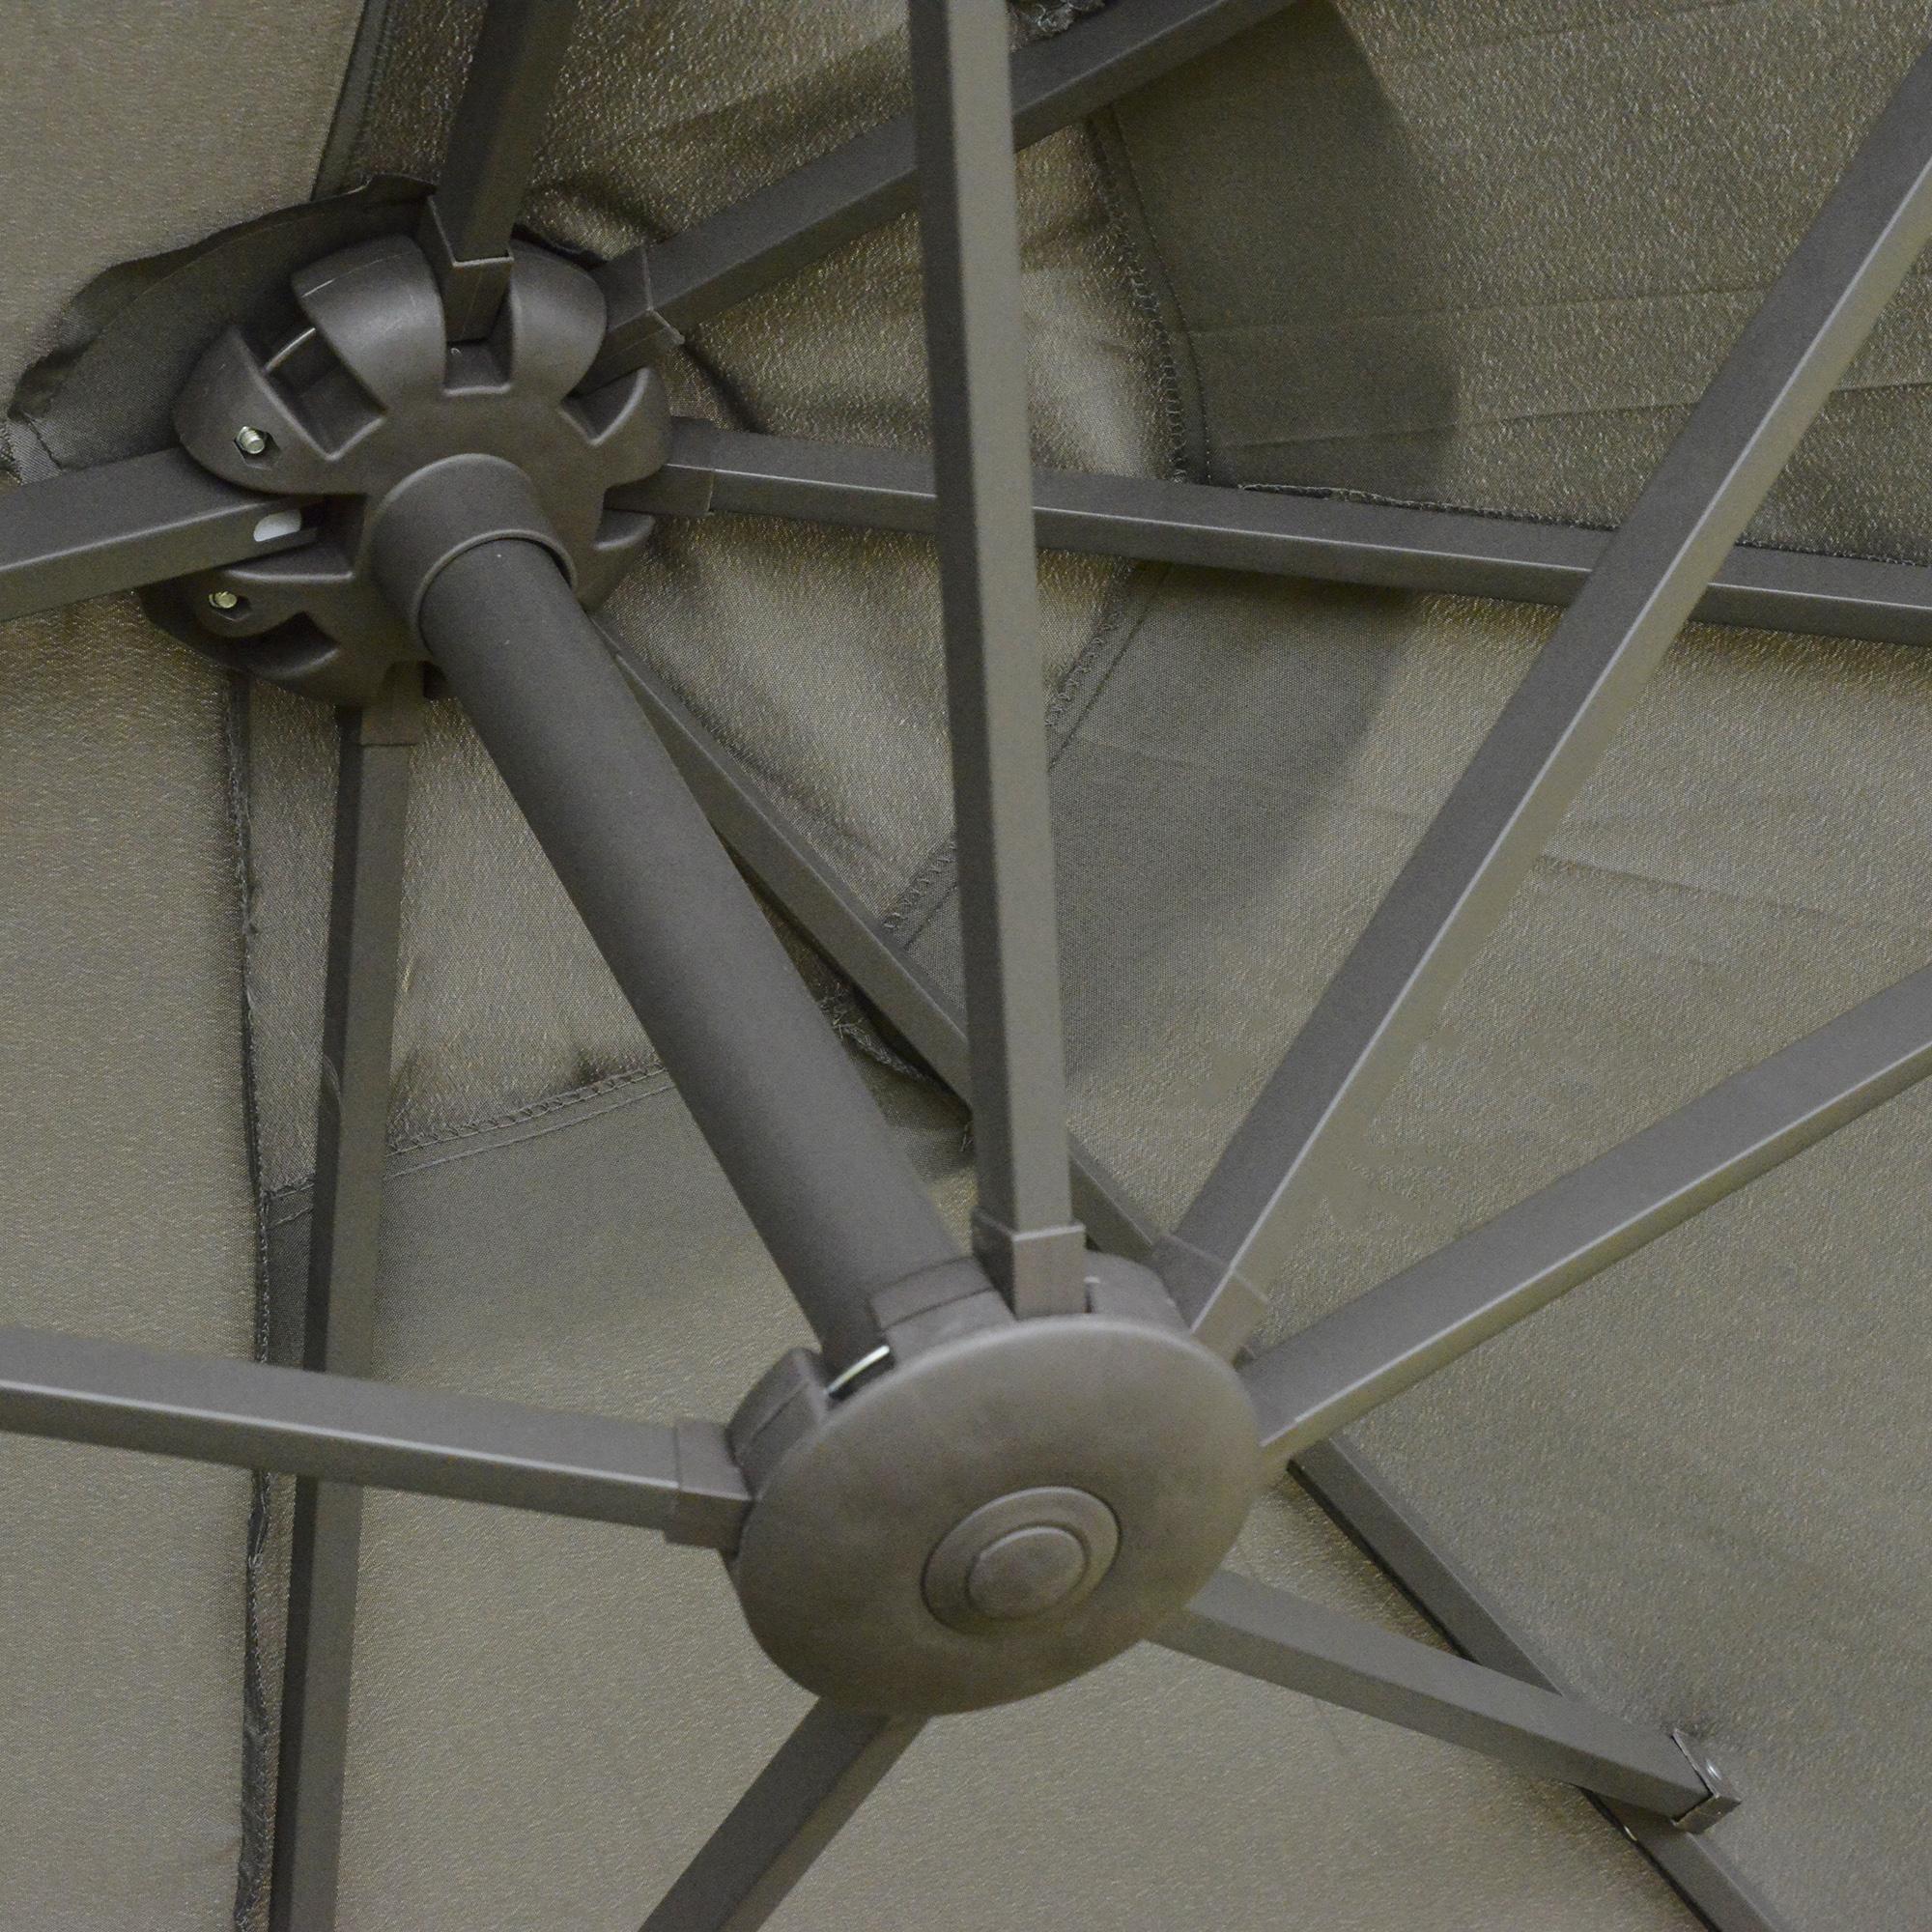 Parasol de jardin XXL pied contrepoids inclus acier polyester haute densité